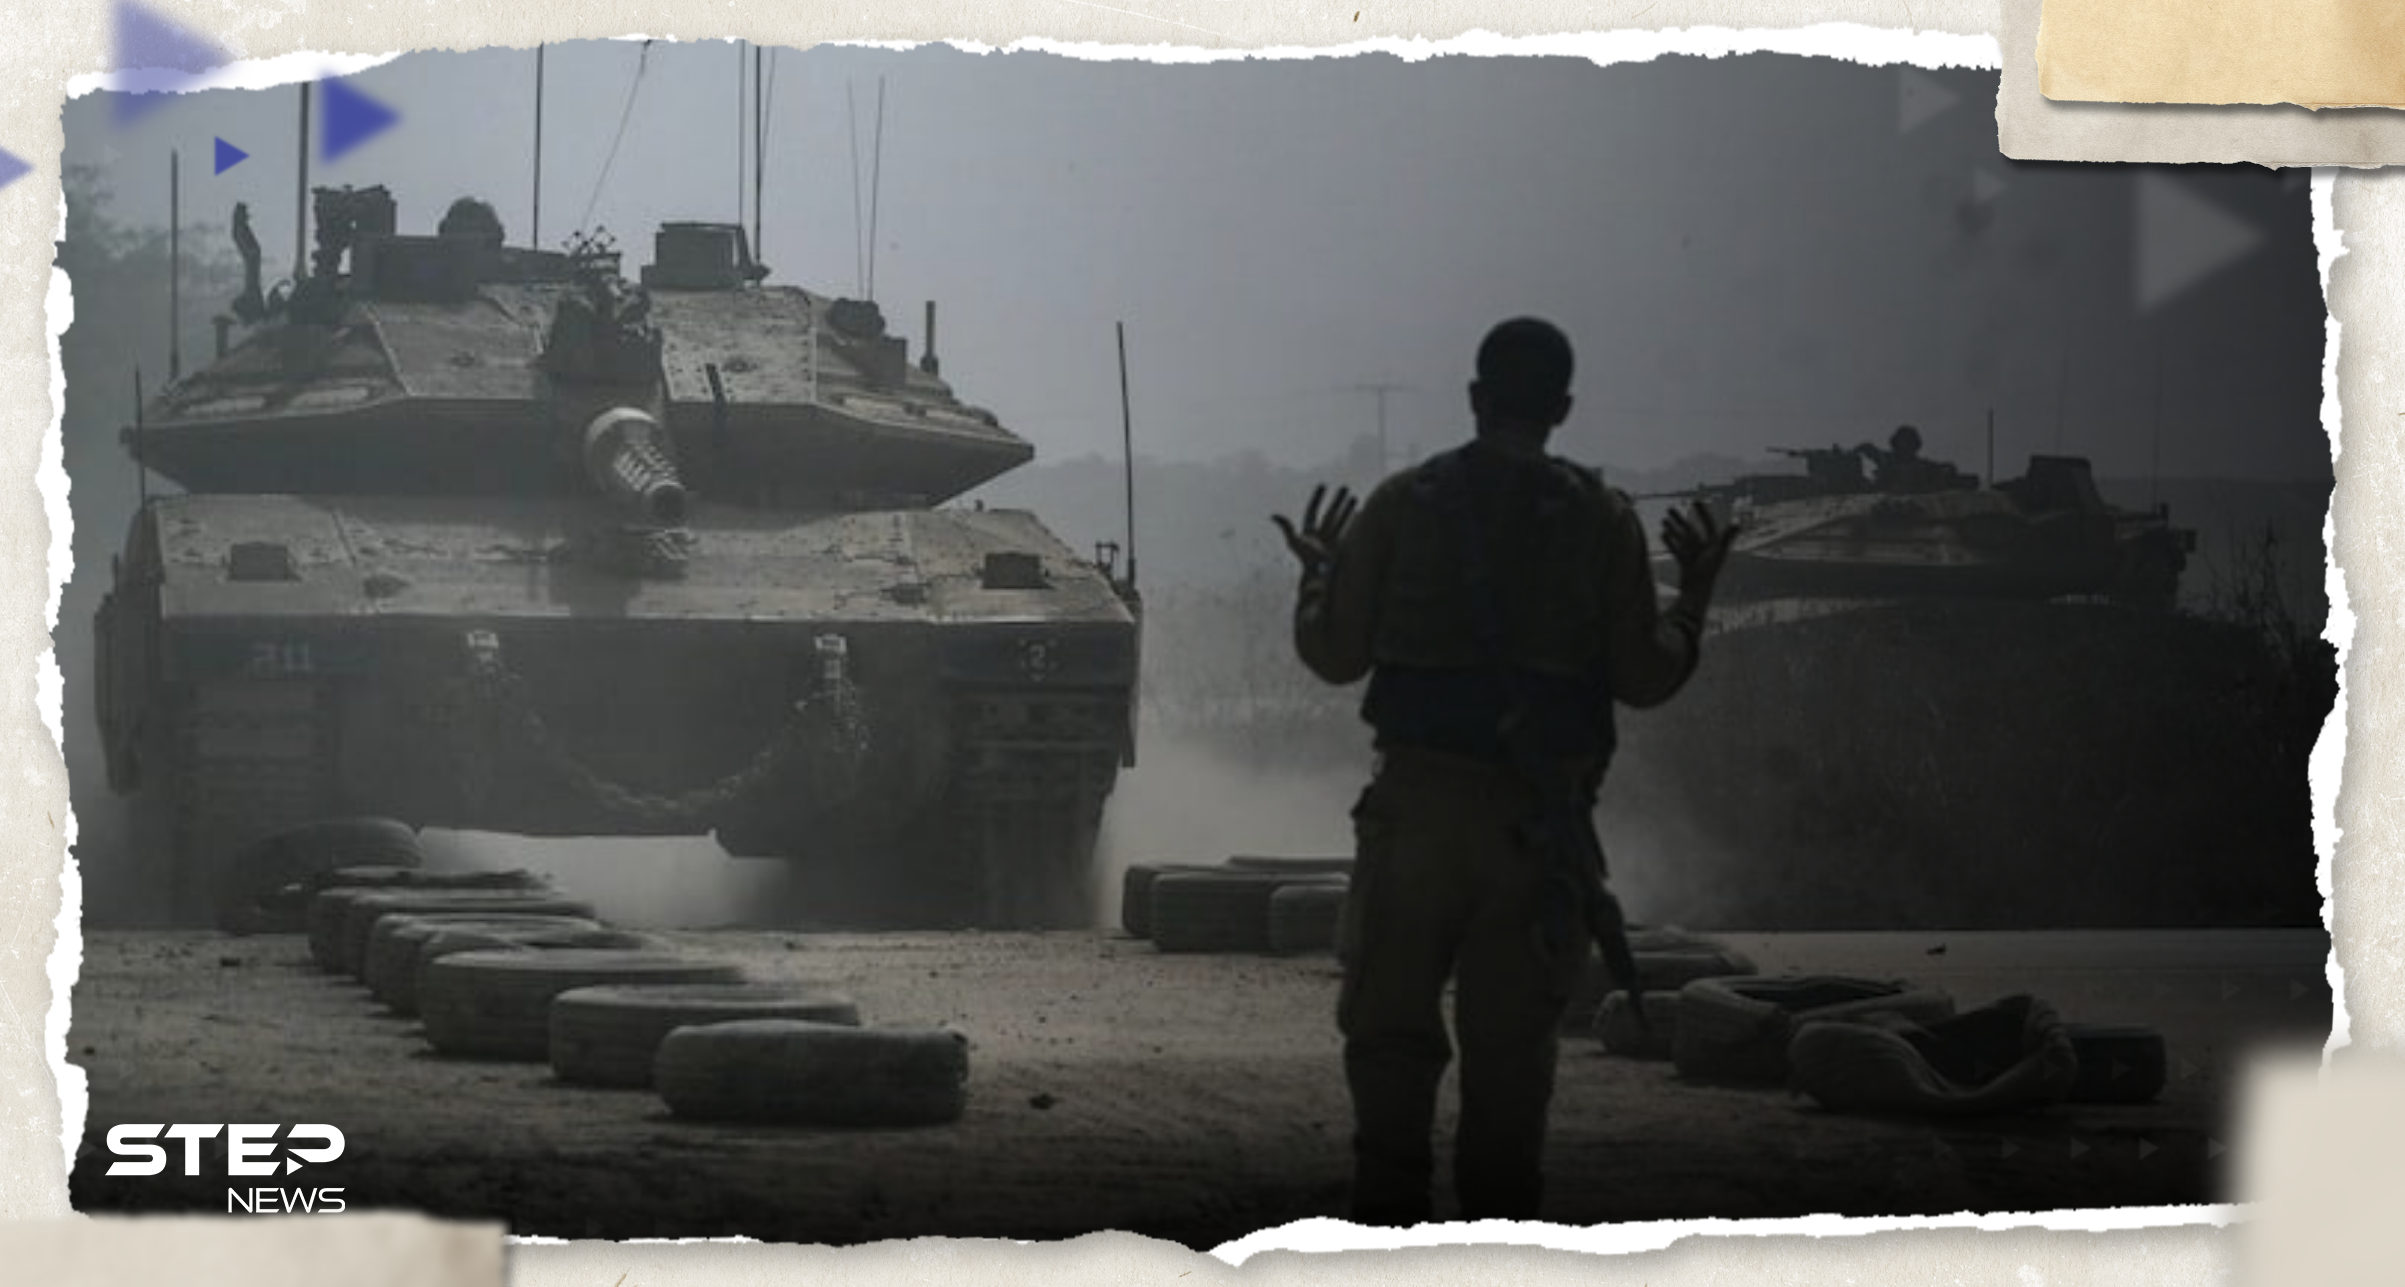 إسرائيل تكشف أهم 6 أهداف تريد "سحقها" داخل غزة وخارجها خلال الحرب على حماس